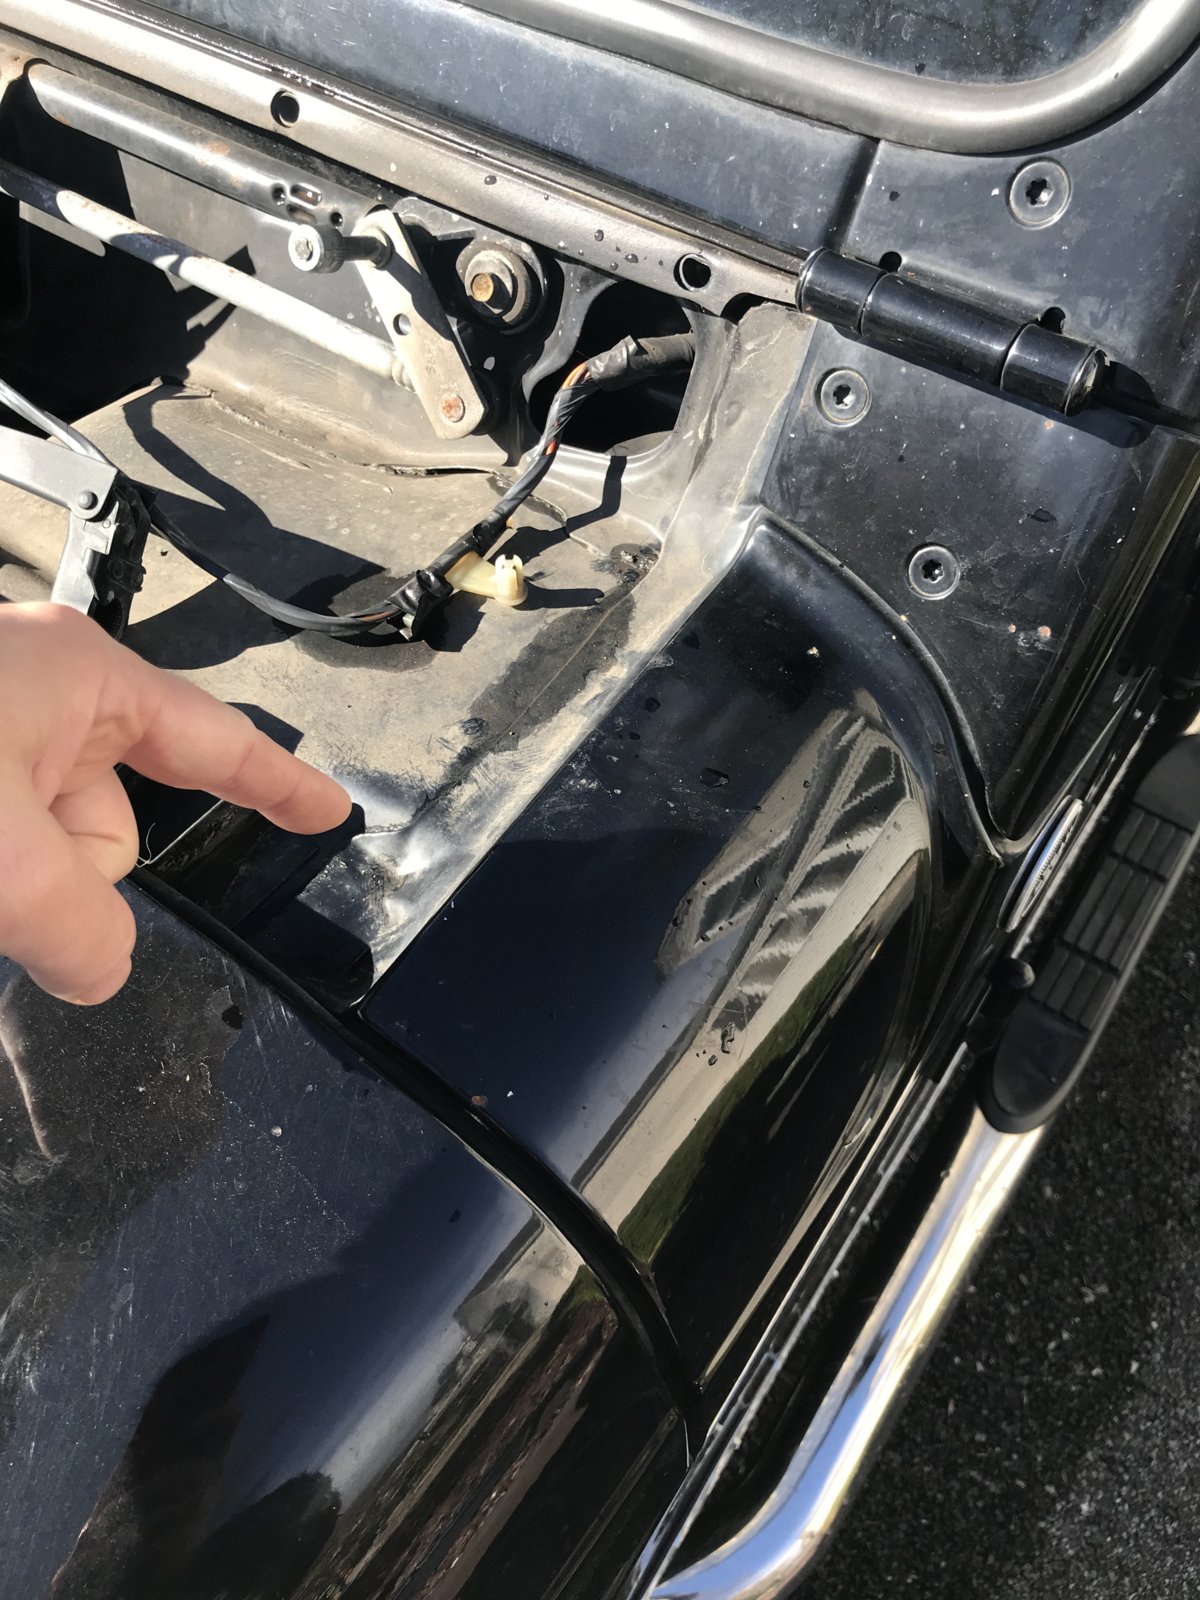 Strange drivers side water leak | Jeep Wrangler TJ Forum